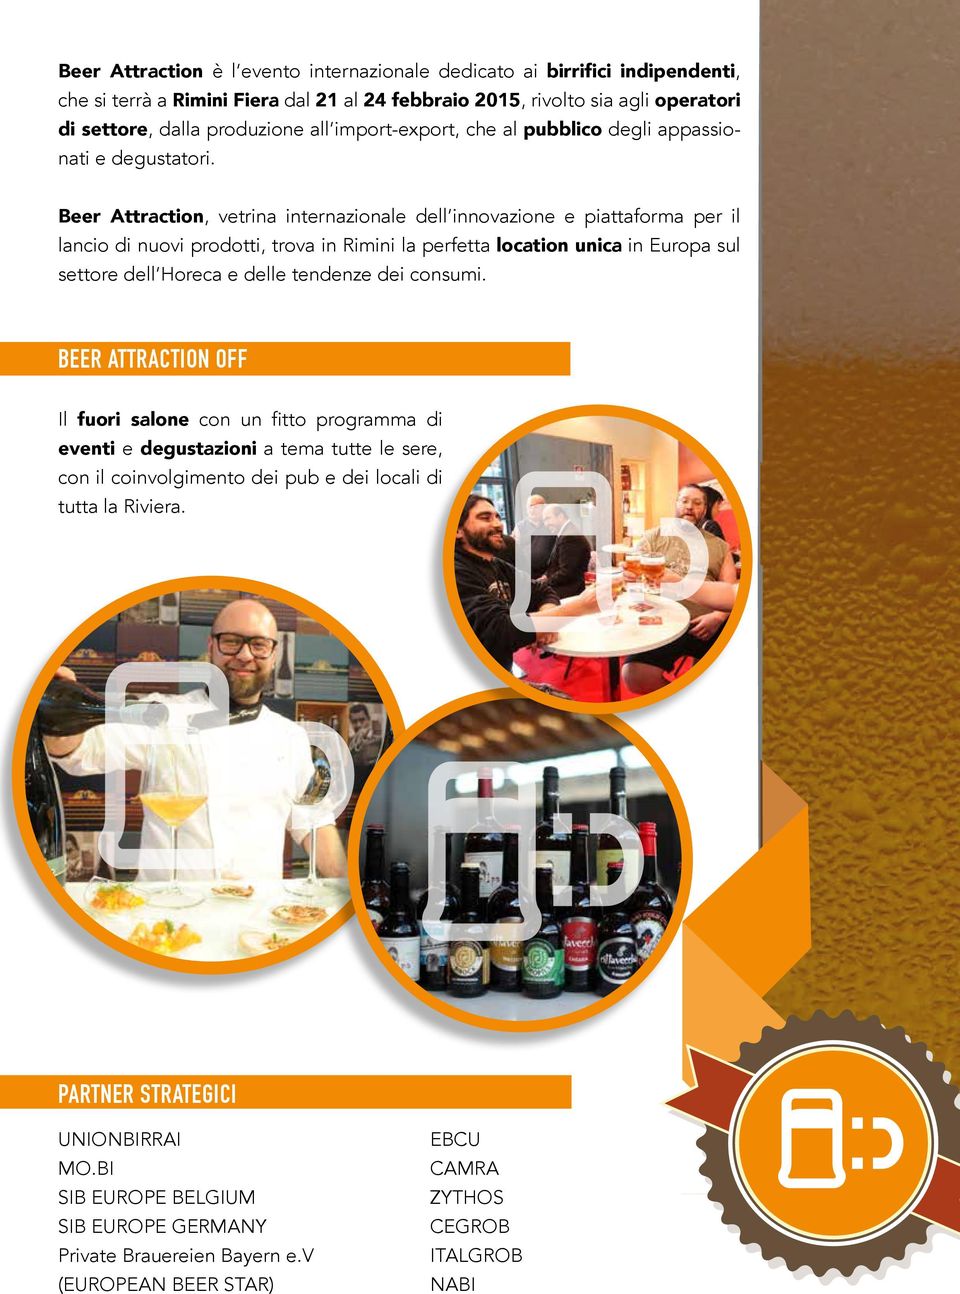 Beer Attraction, vetrina internazionale dell innovazione e piattaforma per il lancio di nuovi prodotti, trova in Rimini la perfetta location unica in Europa sul settore dell Horeca e delle tendenze